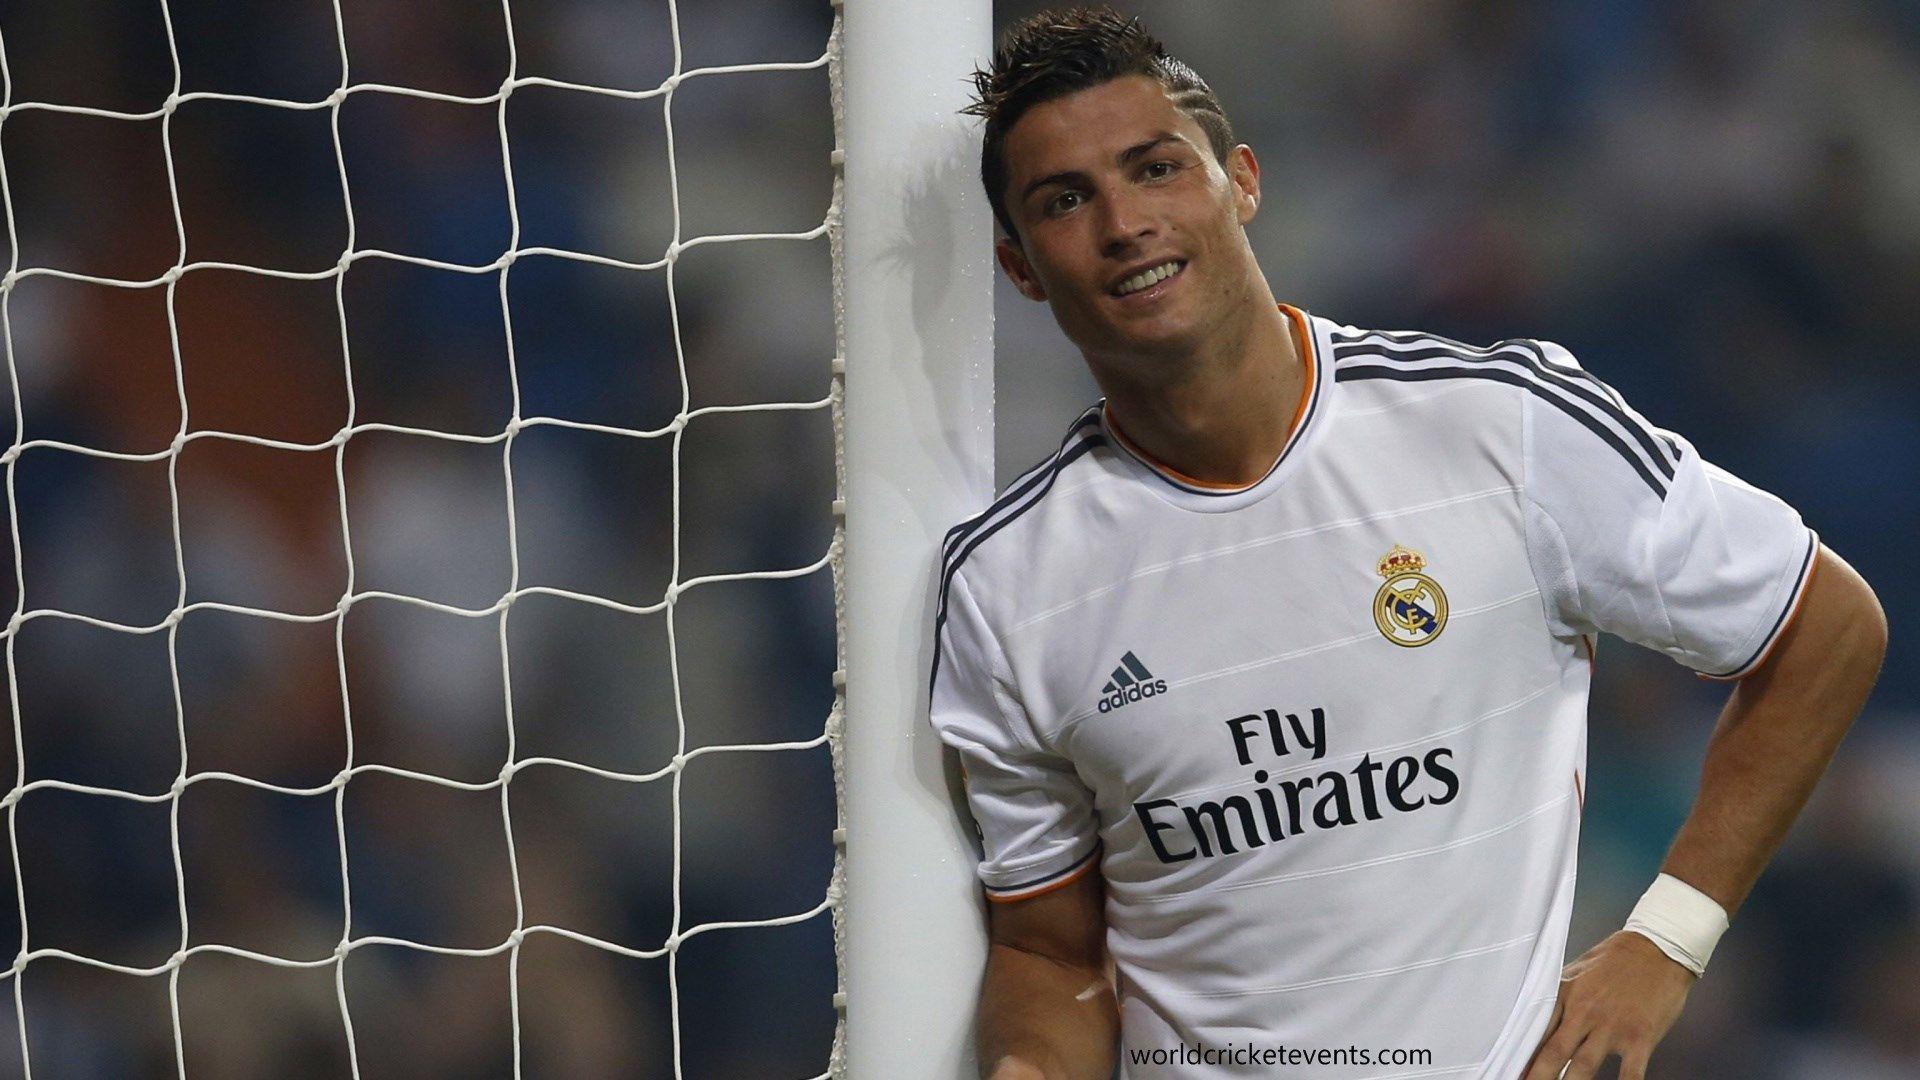 Cristiano Ronaldo In A Match. CR7 HD Image. Cristiano